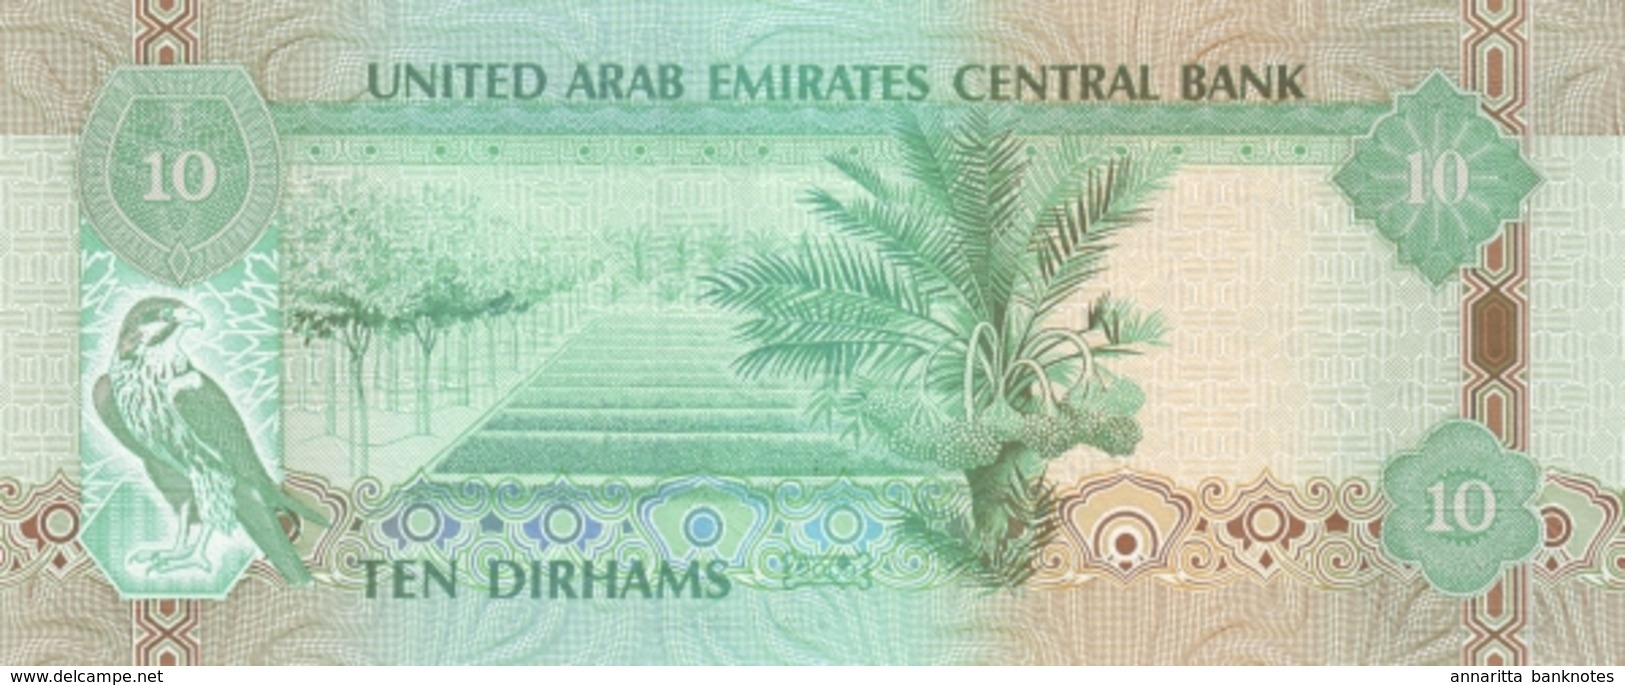 UNITED ARAB EMIRATES 10 DIRHAMS 1430 (2009) P-27a UNC  [AE227a] - Ver. Arab. Emirate